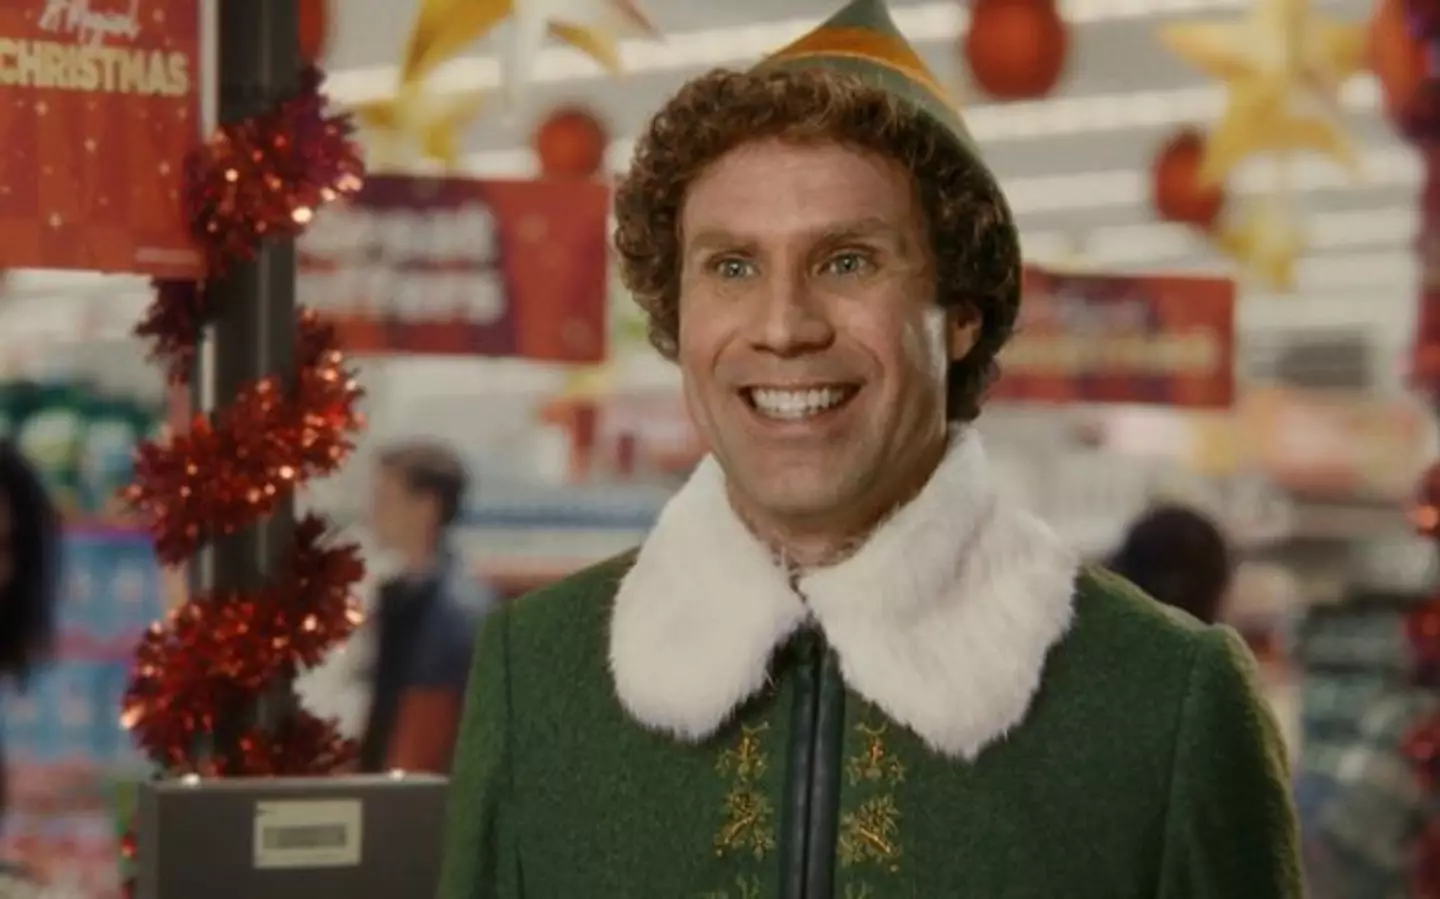 Will Ferrell as Buddy the Elf.